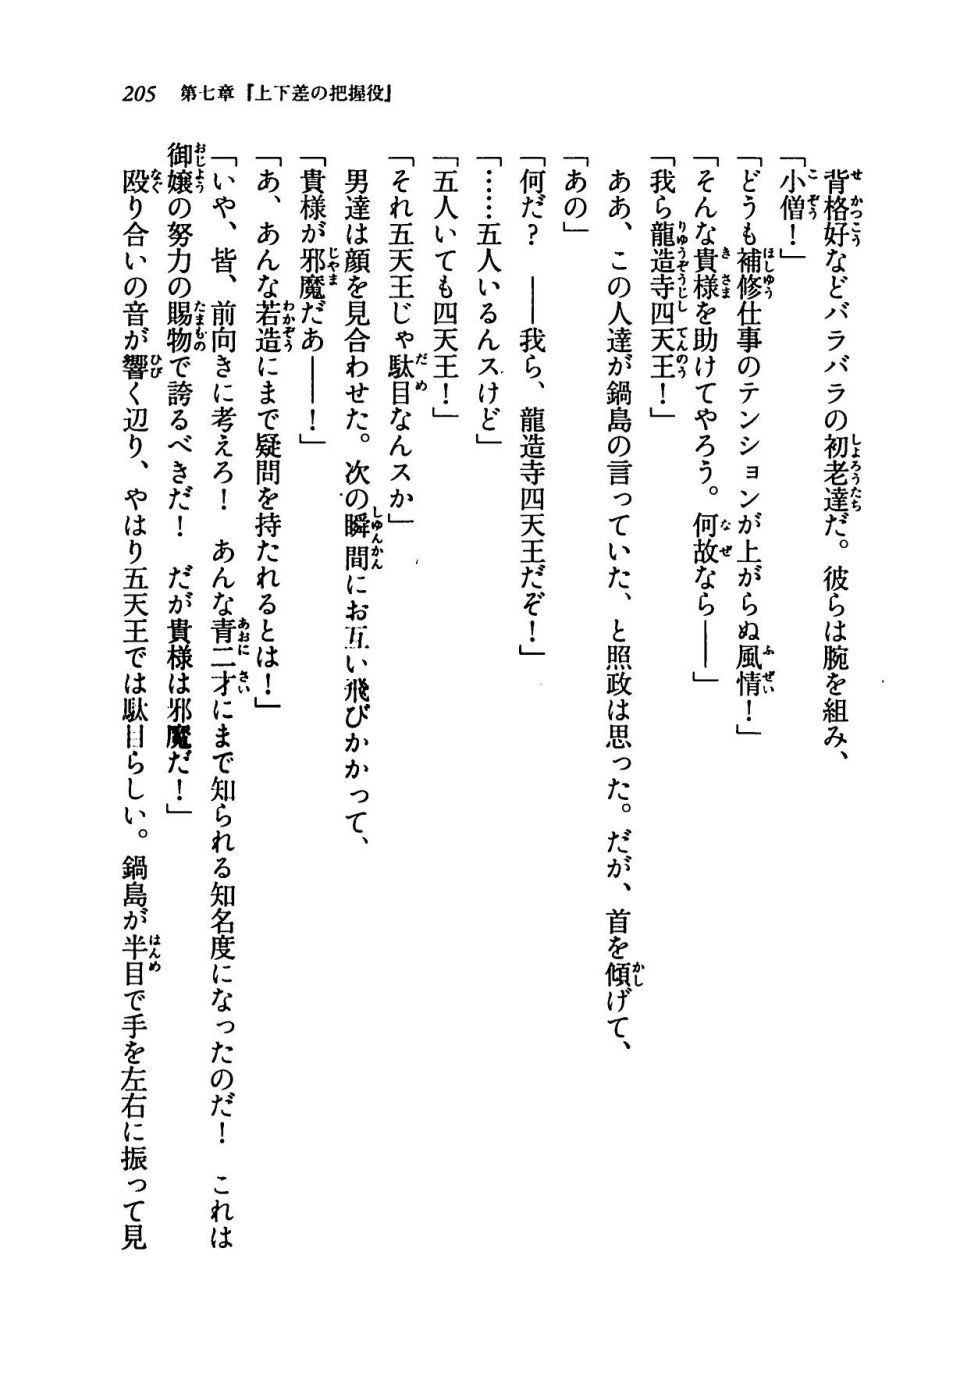 Kyoukai Senjou no Horizon LN Vol 19(8A) - Photo #205